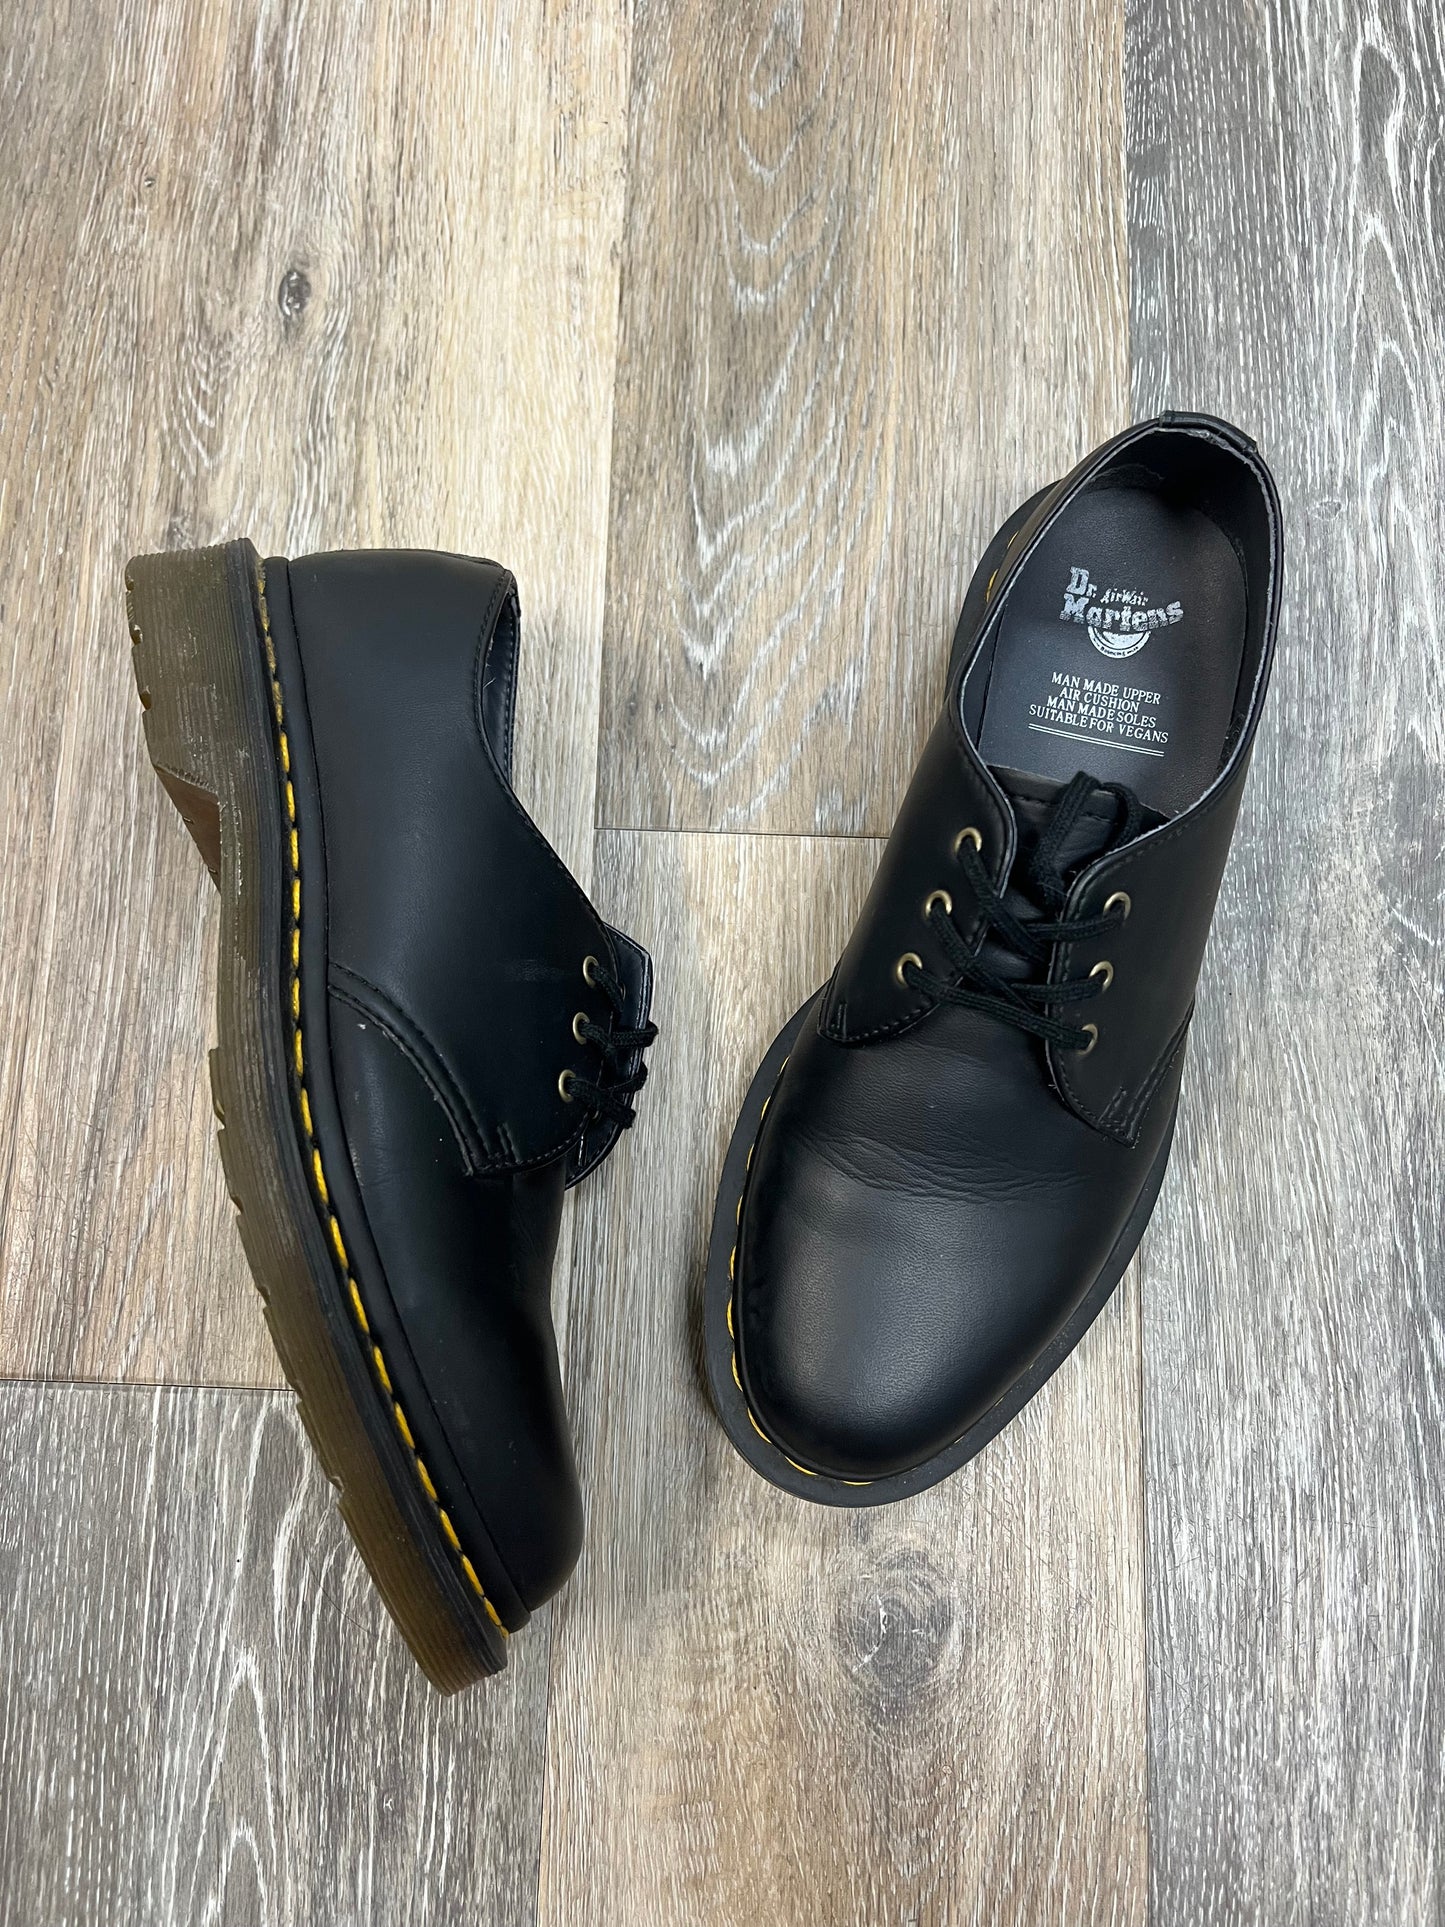 Black Shoes Flats Dr Martens, Size 8